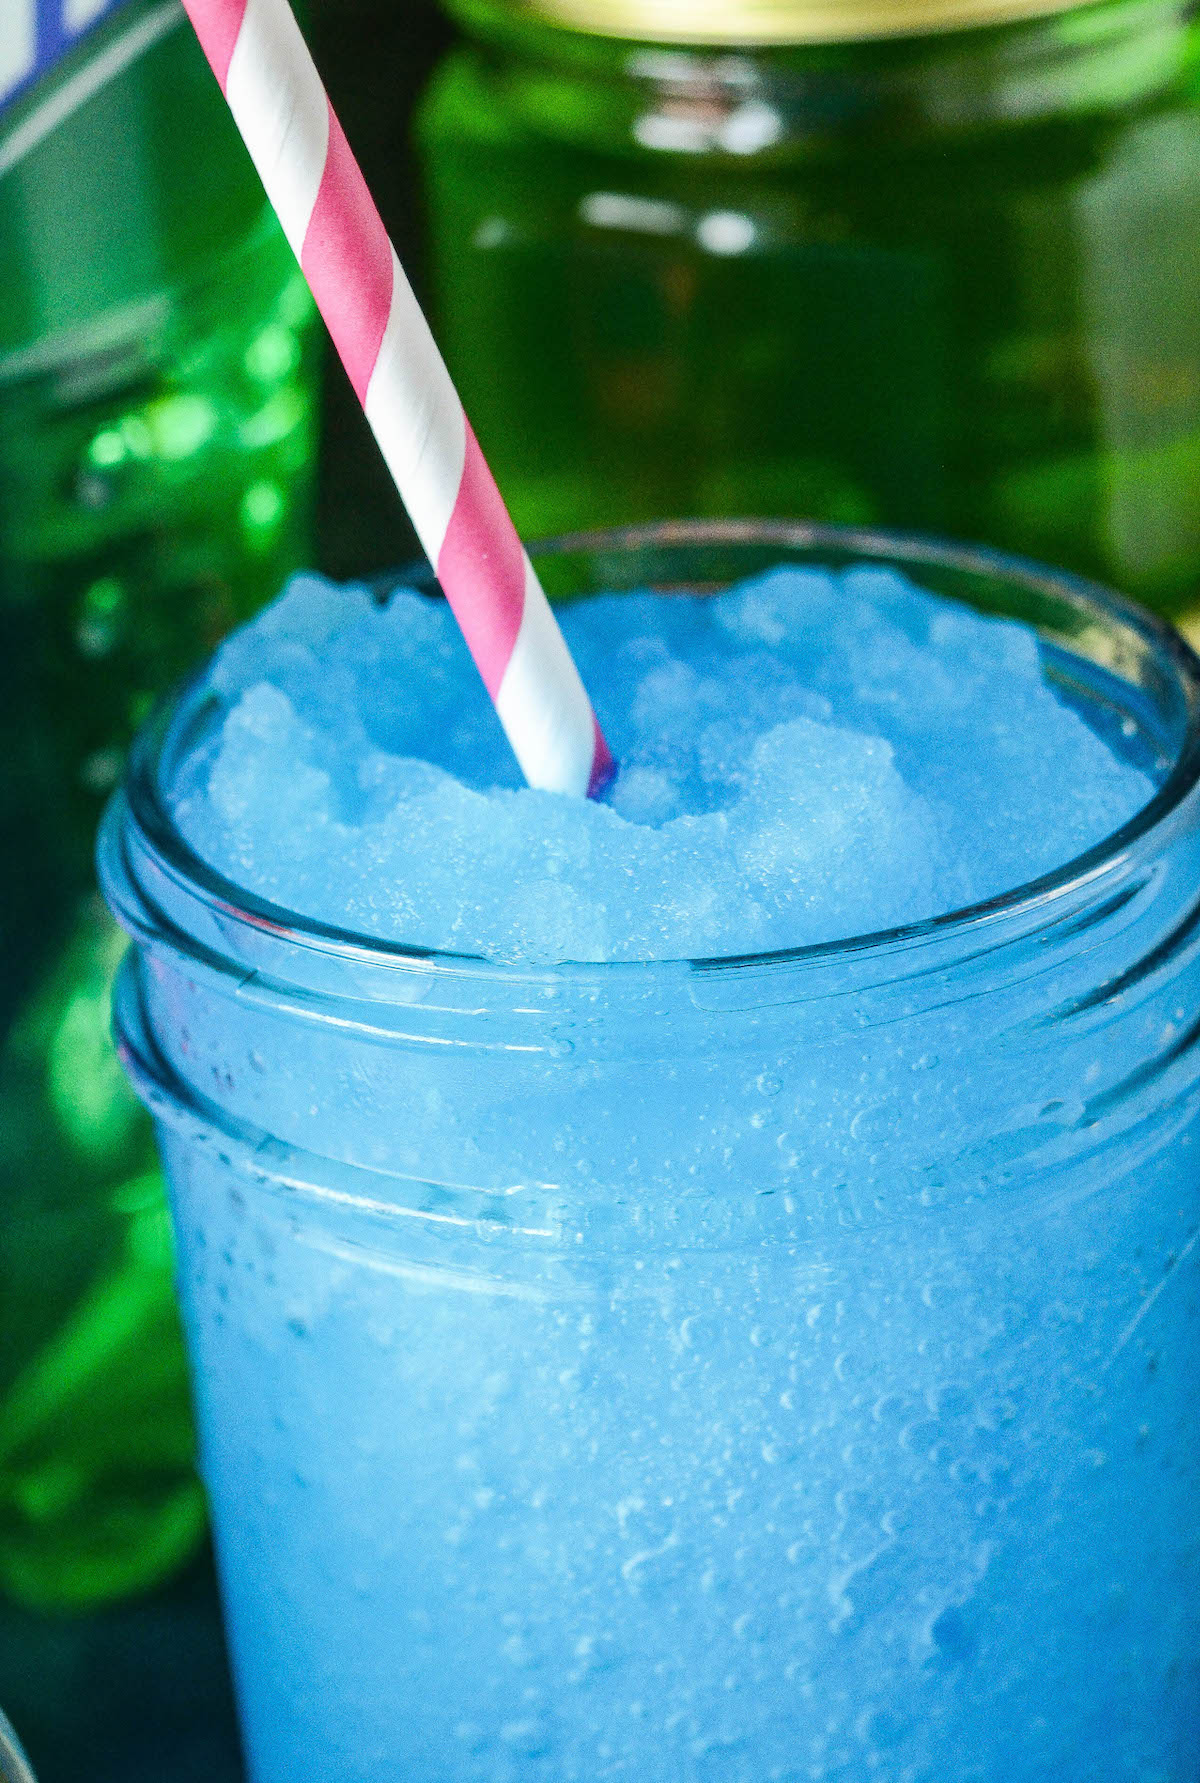 Крупным планом изображение голубого пьяного веселого напитка ранчера с розовой соломинкой.